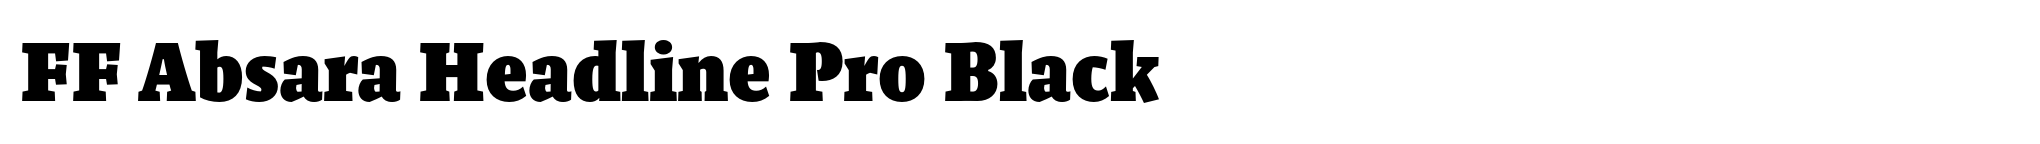 FF Absara Headline Pro Black image